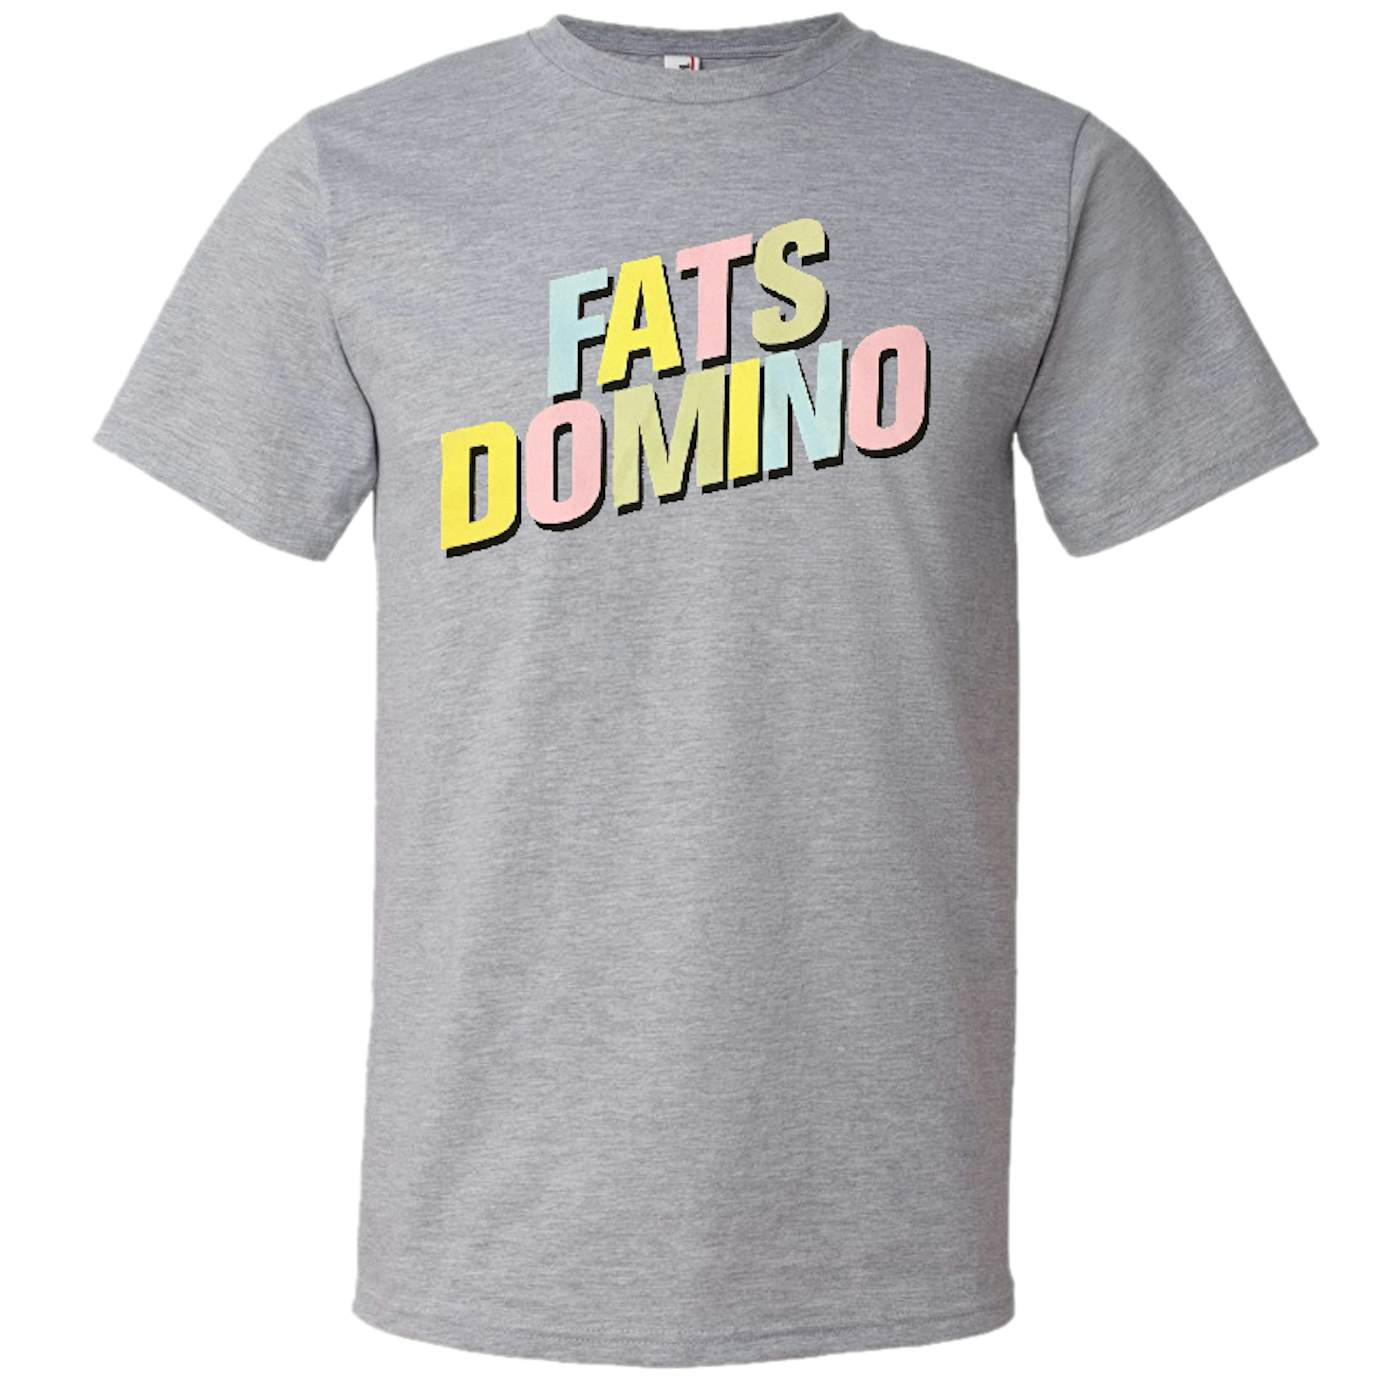 Fats Domino Heather Grey Logo Tee